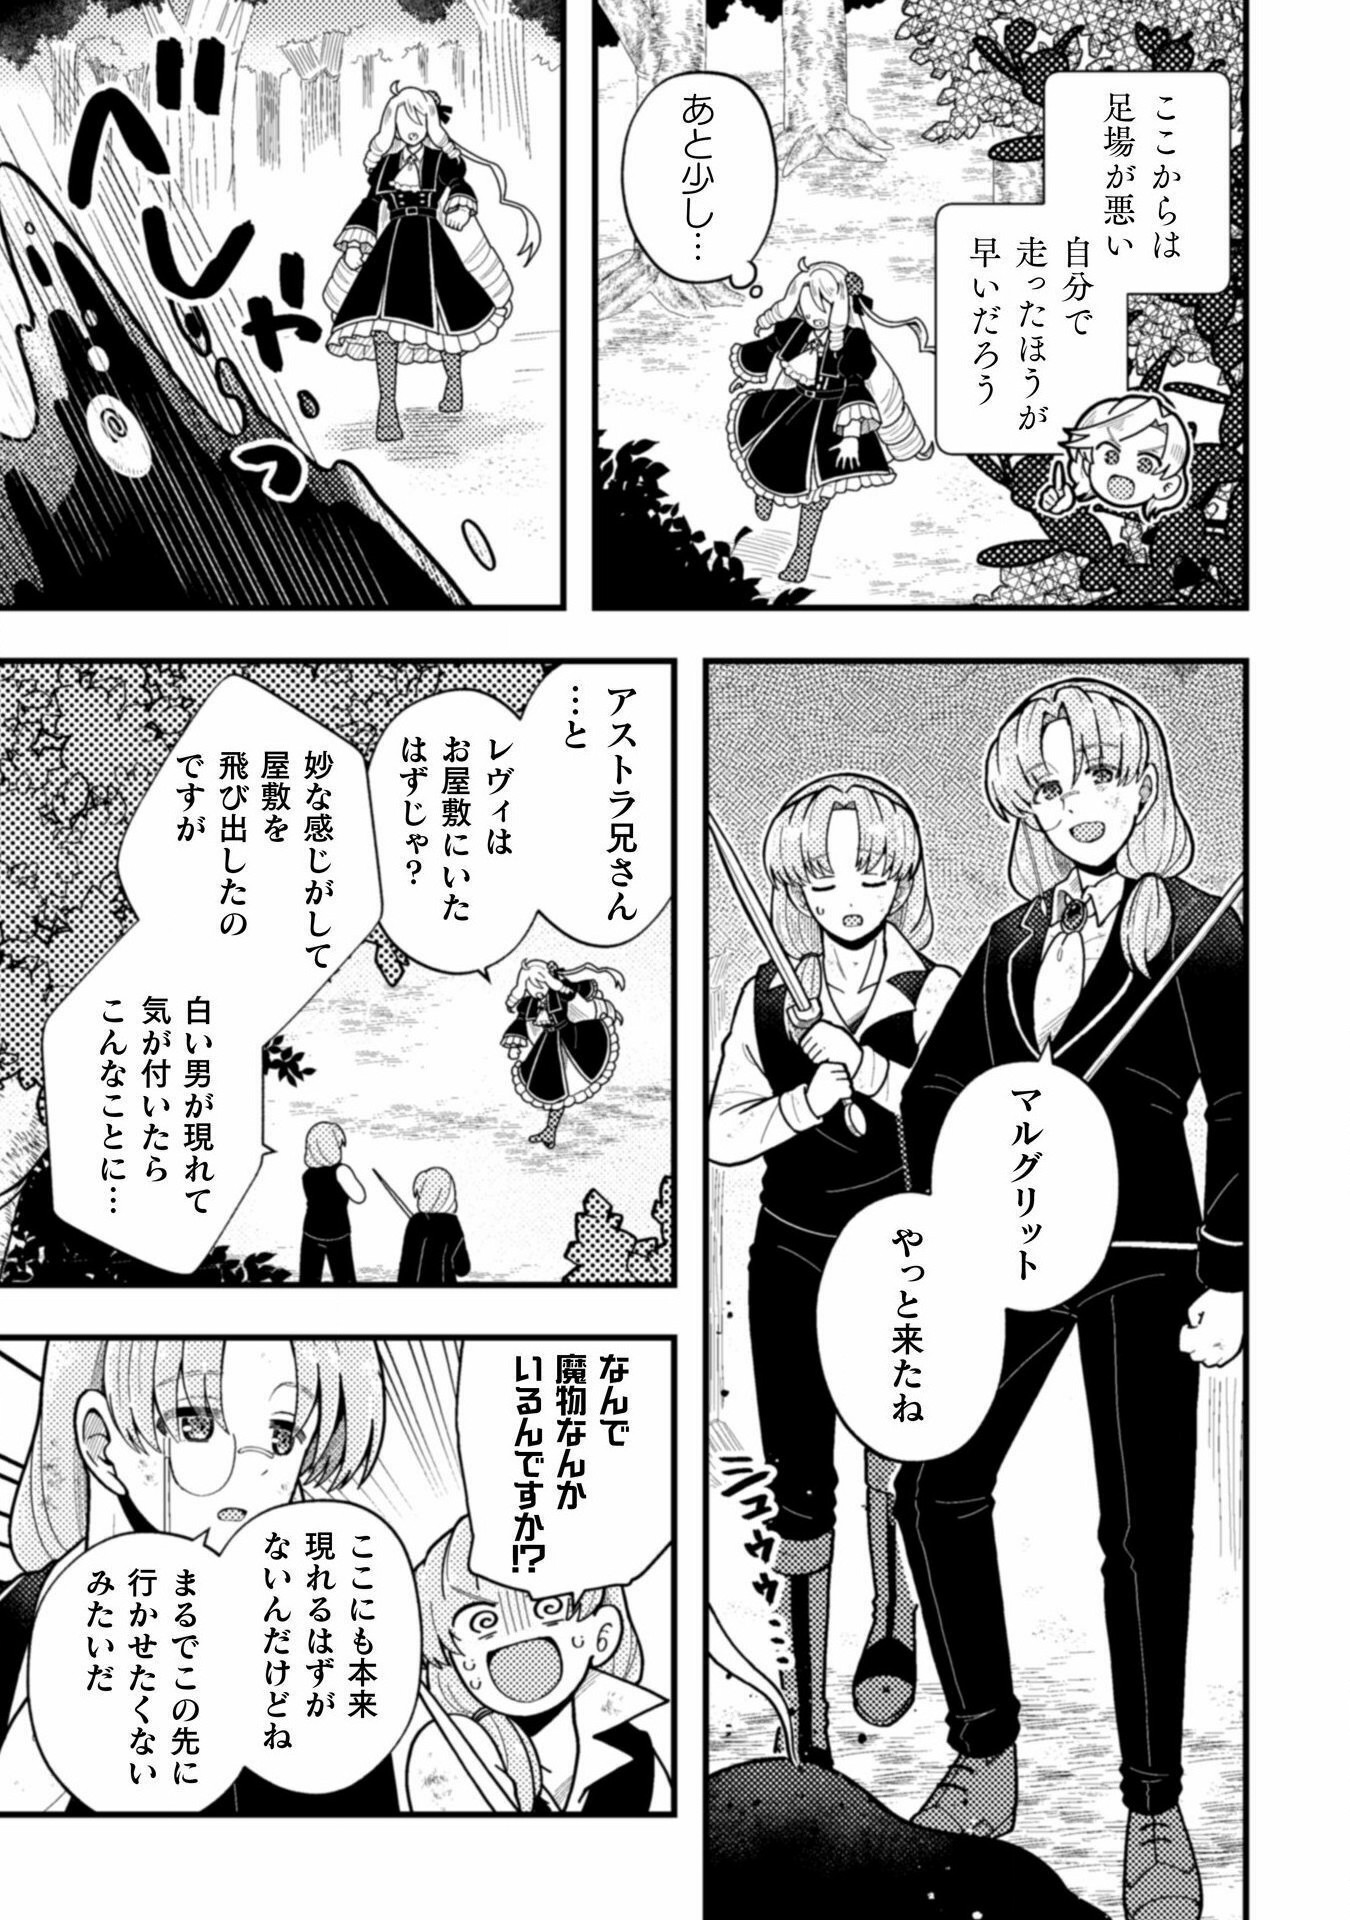 Otome Game no Akuyaku Reijou ni Tensei shitakedo Follower ga Fukyoushiteta Chisiki shikanai - Chapter 22 - Page 21